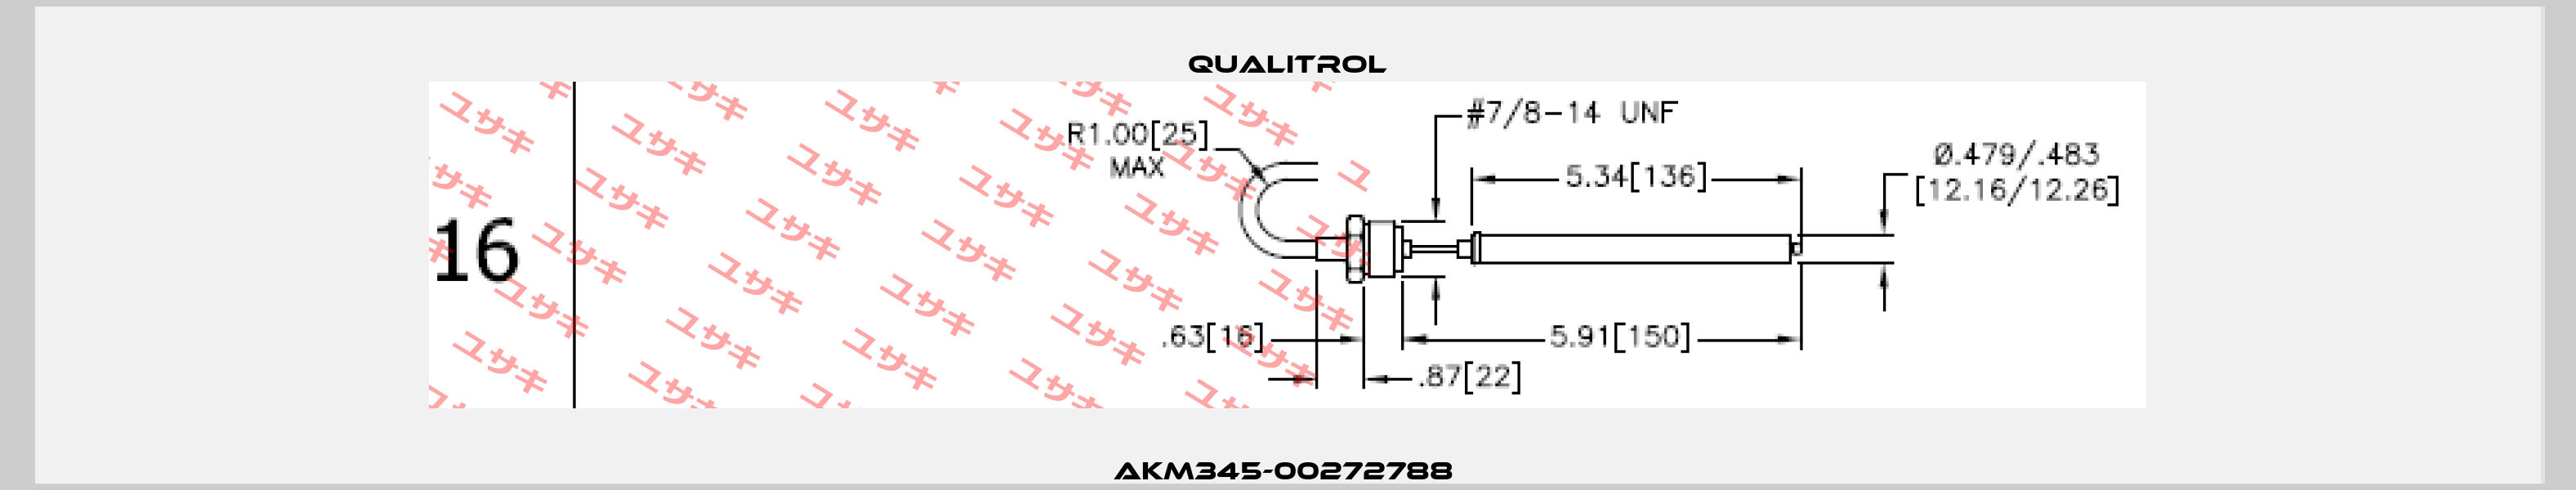 AKM345-00272788  Qualitrol